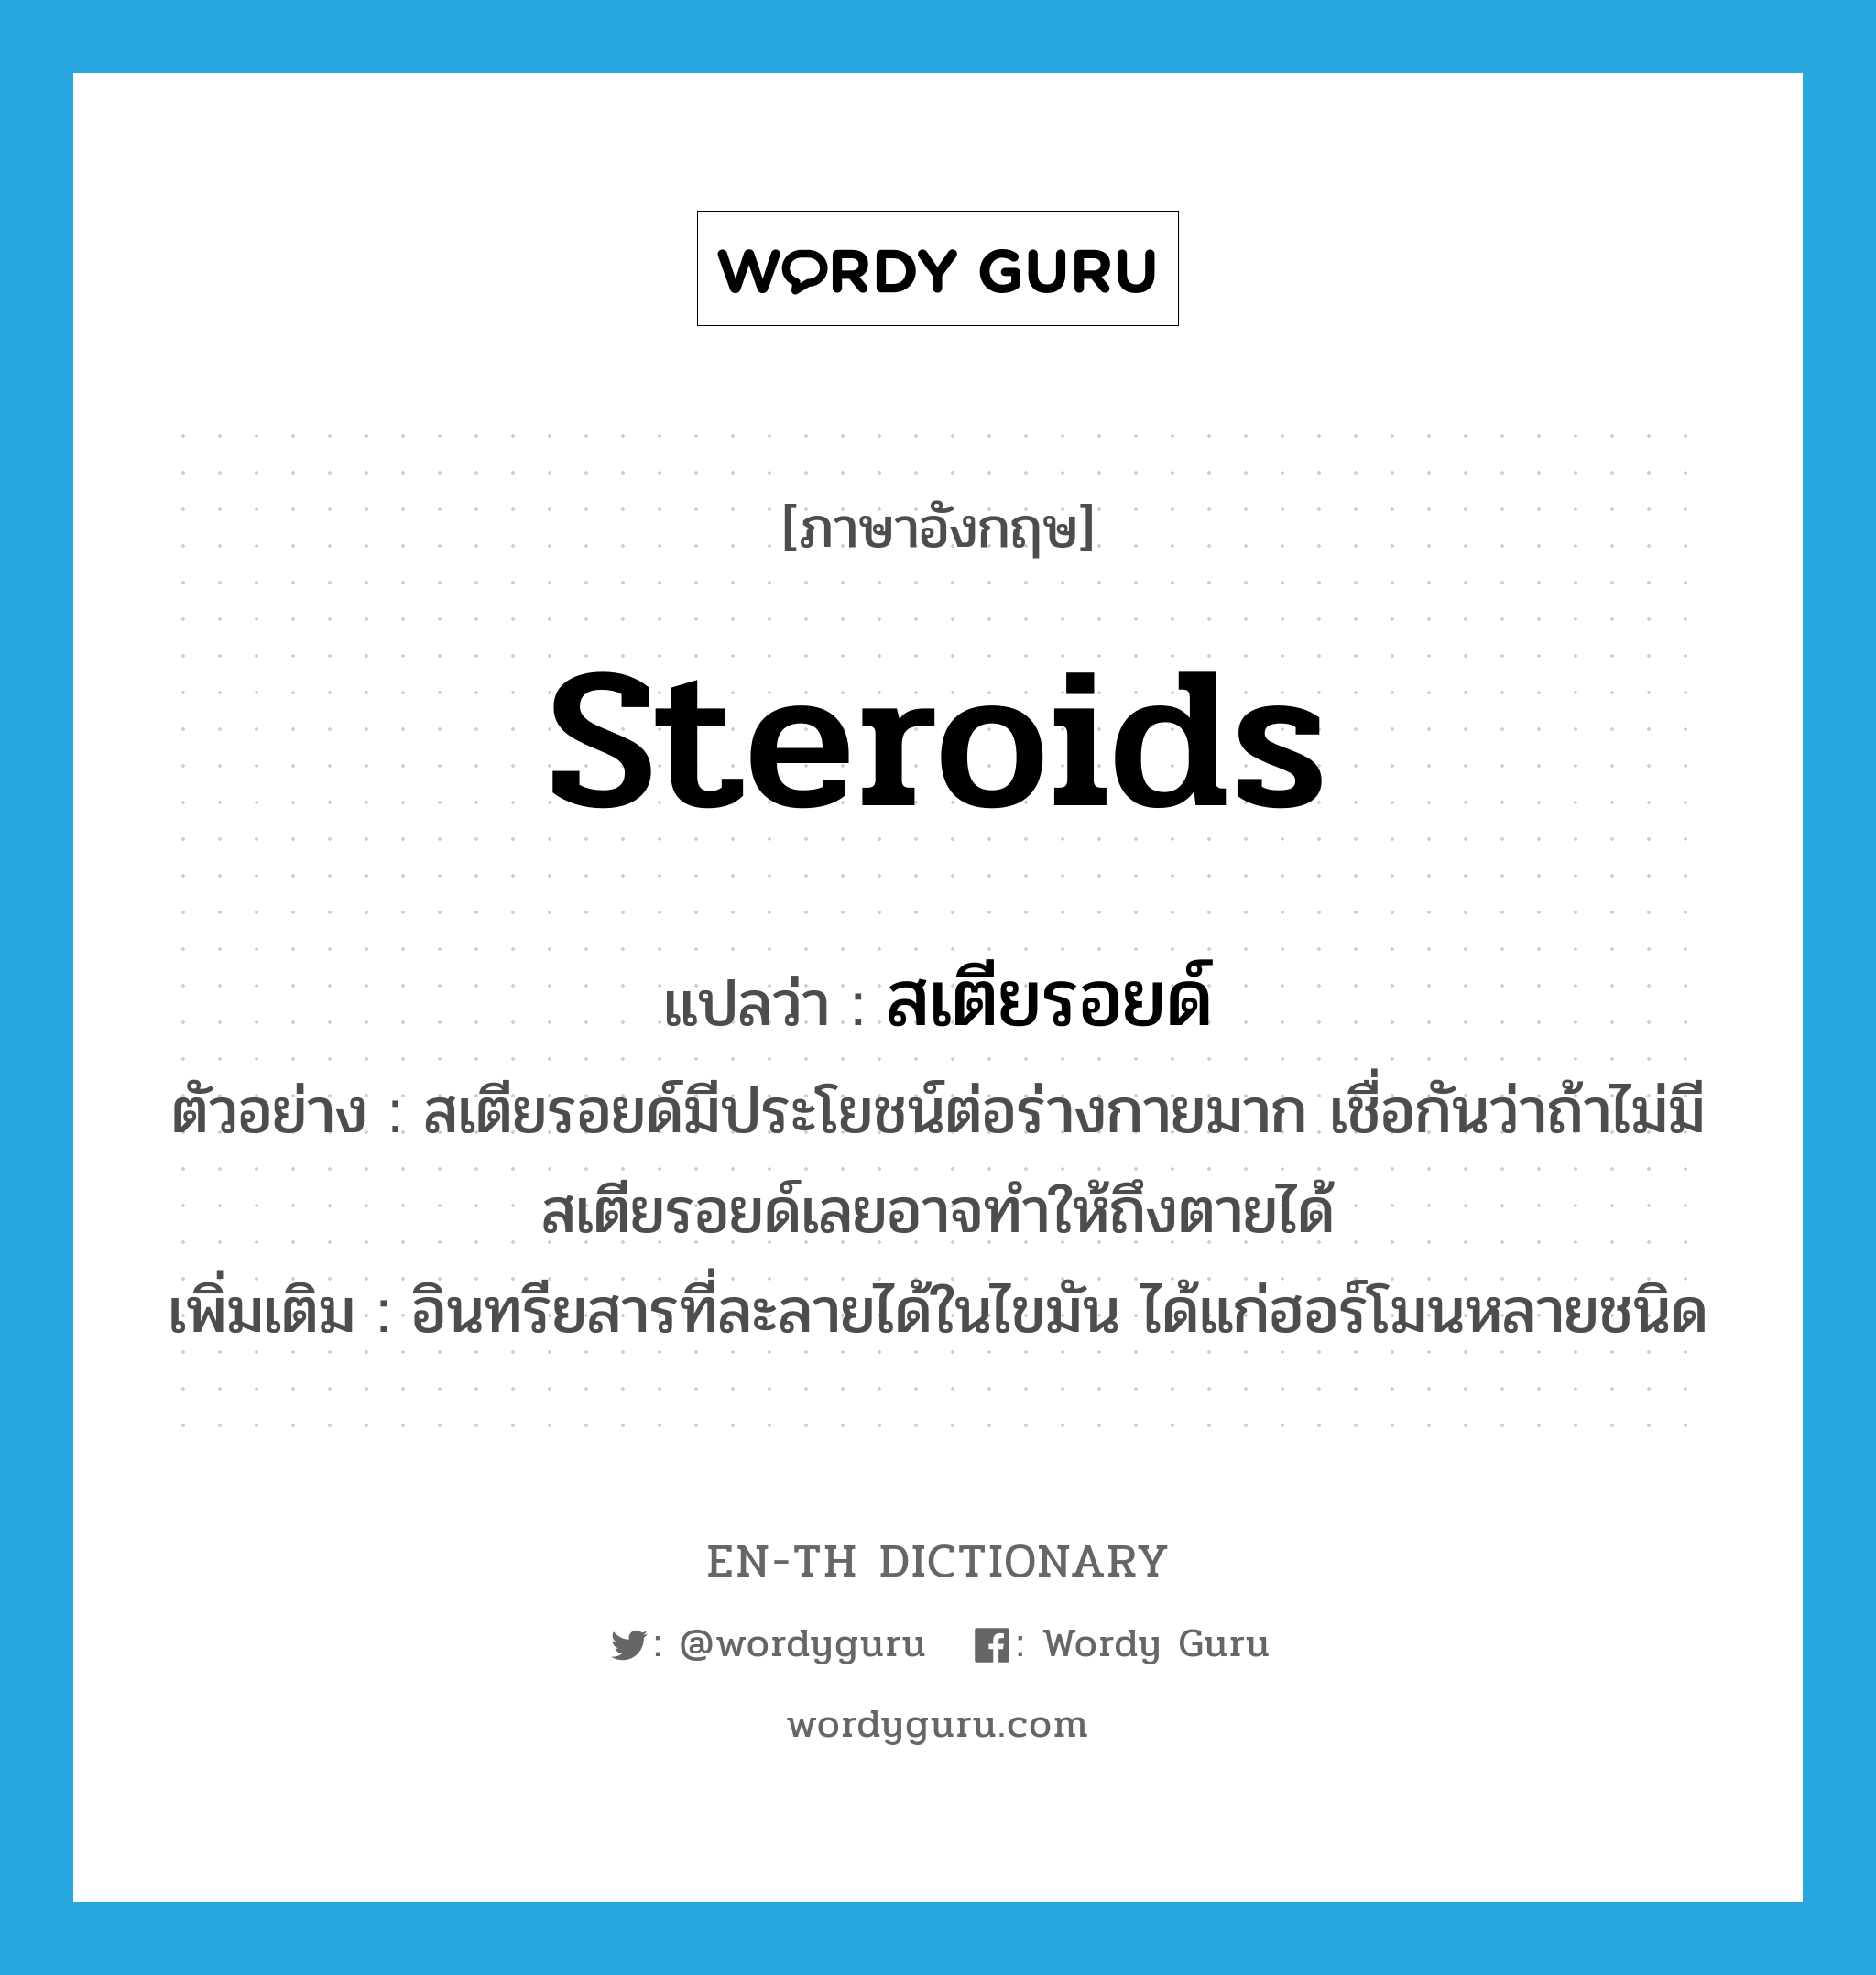 Steroids แปลว่า?, คำศัพท์ภาษาอังกฤษ Steroids แปลว่า สเตียรอยด์ ประเภท N ตัวอย่าง สเตียรอยด์มีประโยชน์ต่อร่างกายมาก เชื่อกันว่าถ้าไม่มีสเตียรอยด์เลยอาจทำให้ถึงตายได้ เพิ่มเติม อินทรียสารที่ละลายได้ในไขมัน ได้แก่ฮอร์โมนหลายชนิด หมวด N